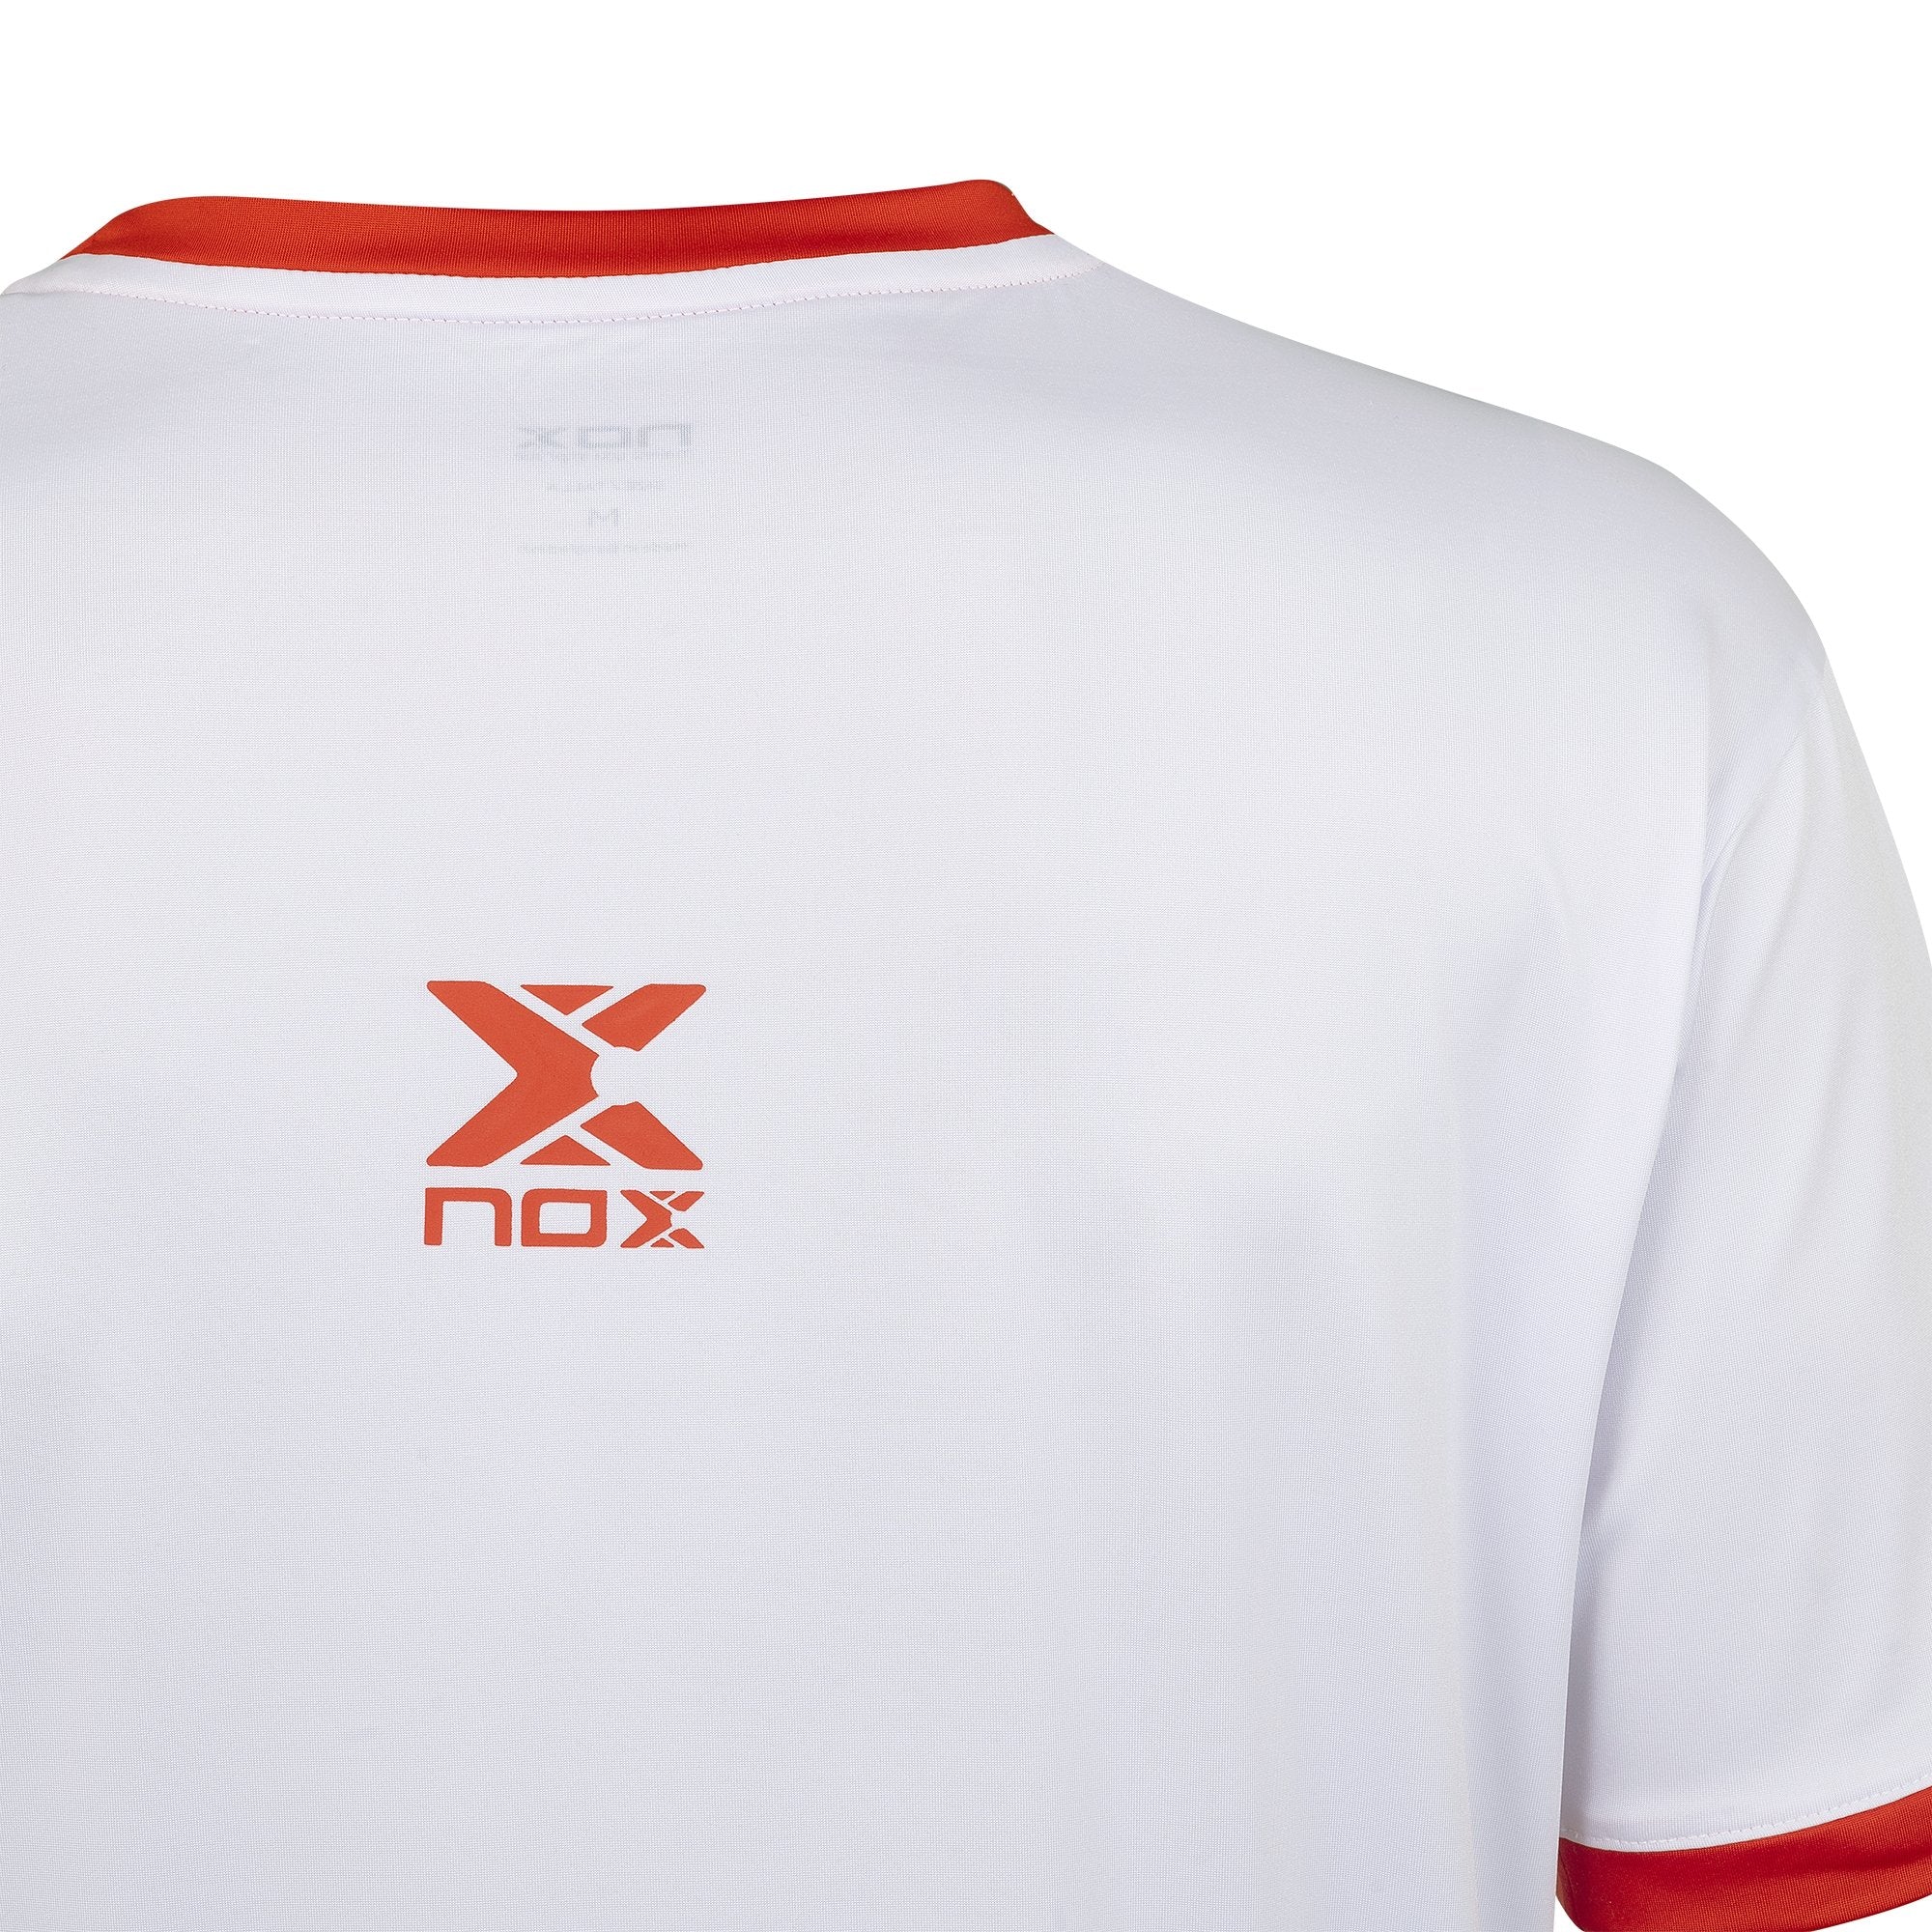 Camiseta pádel hombre TEAM blanca - NOX